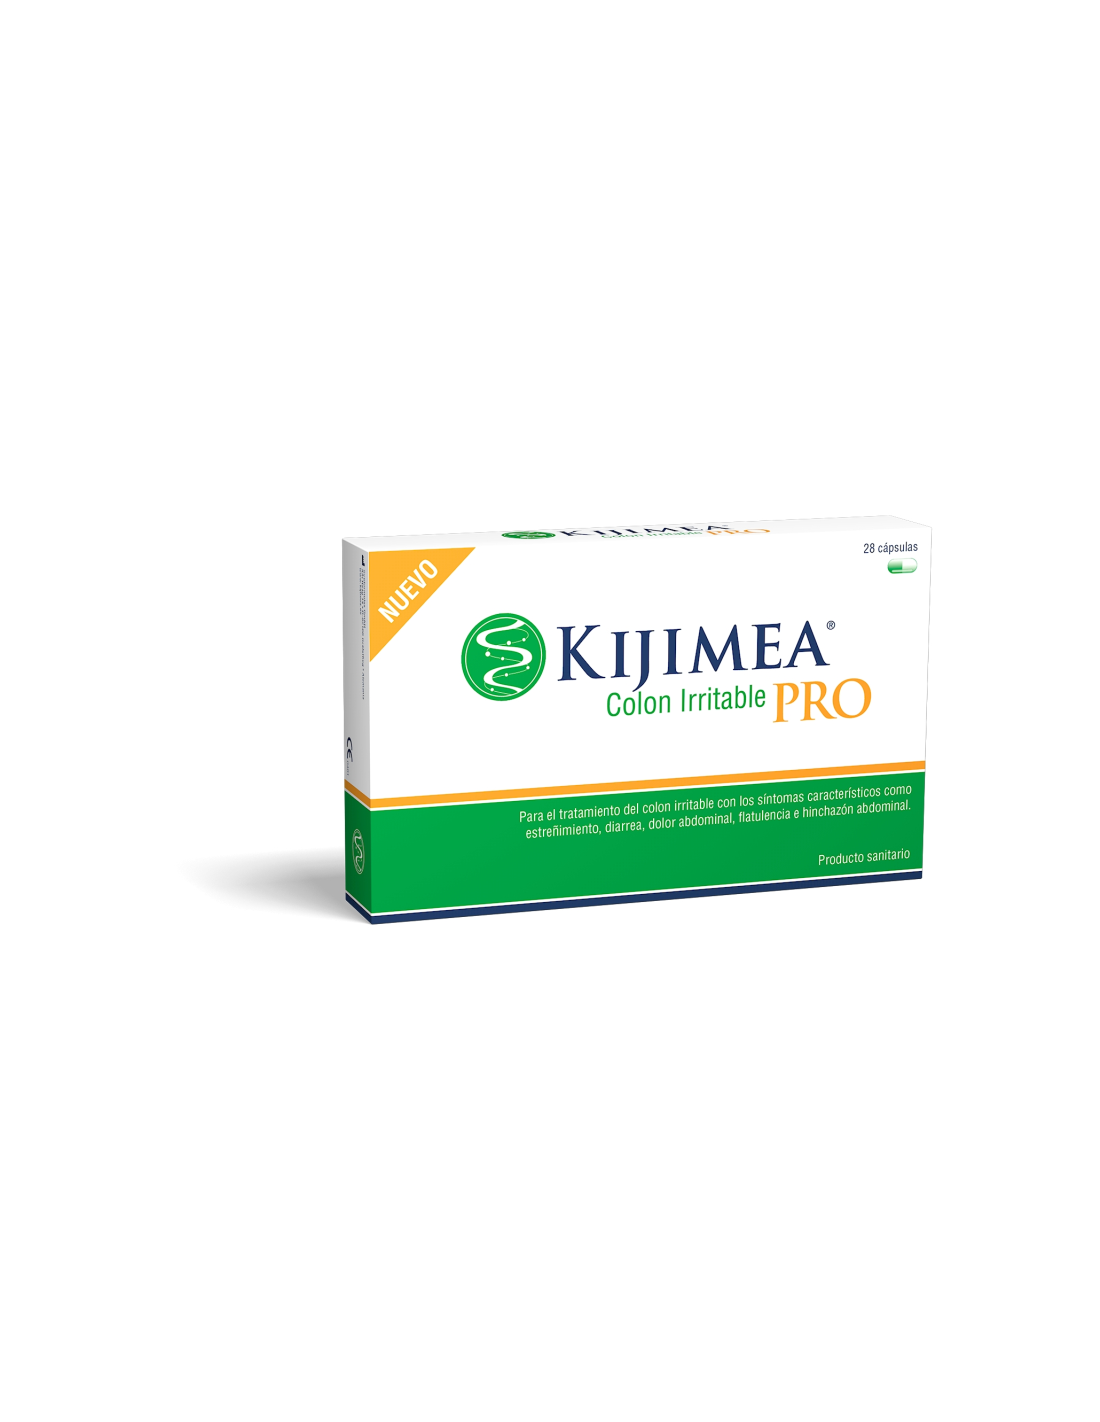 Kijimea® Colon Irritable PRO